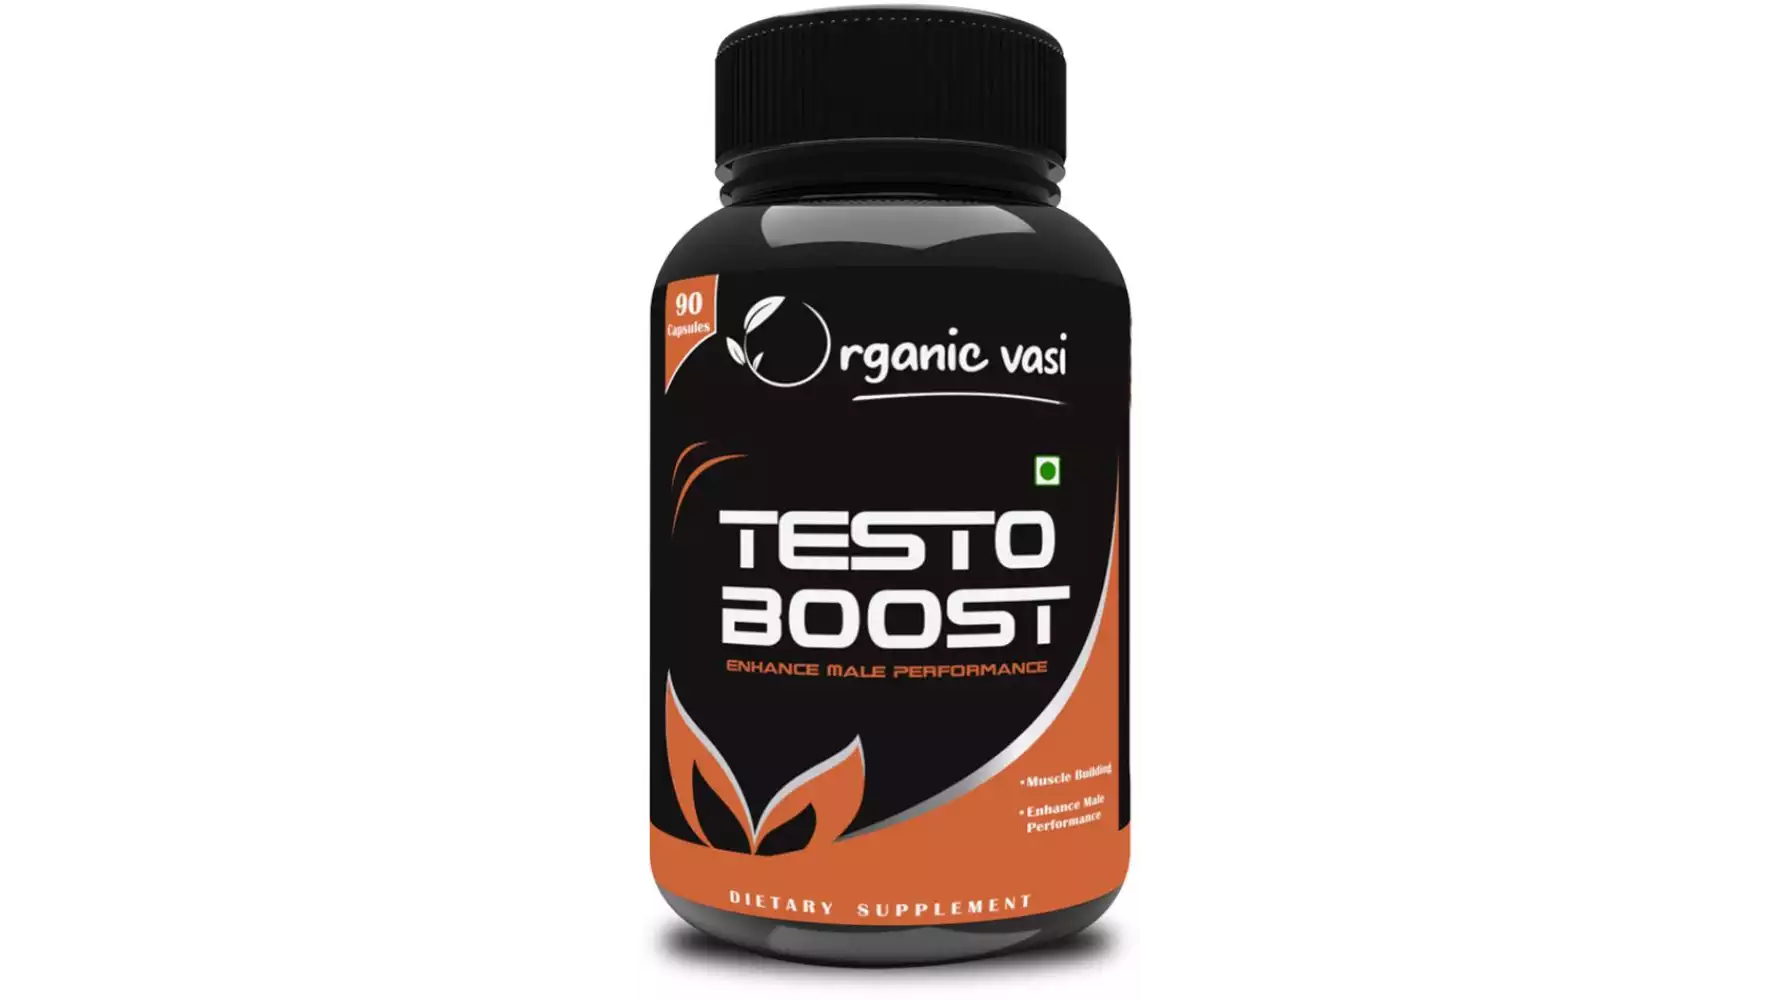 Organic Vasi Testo Boost Supplement (90caps)